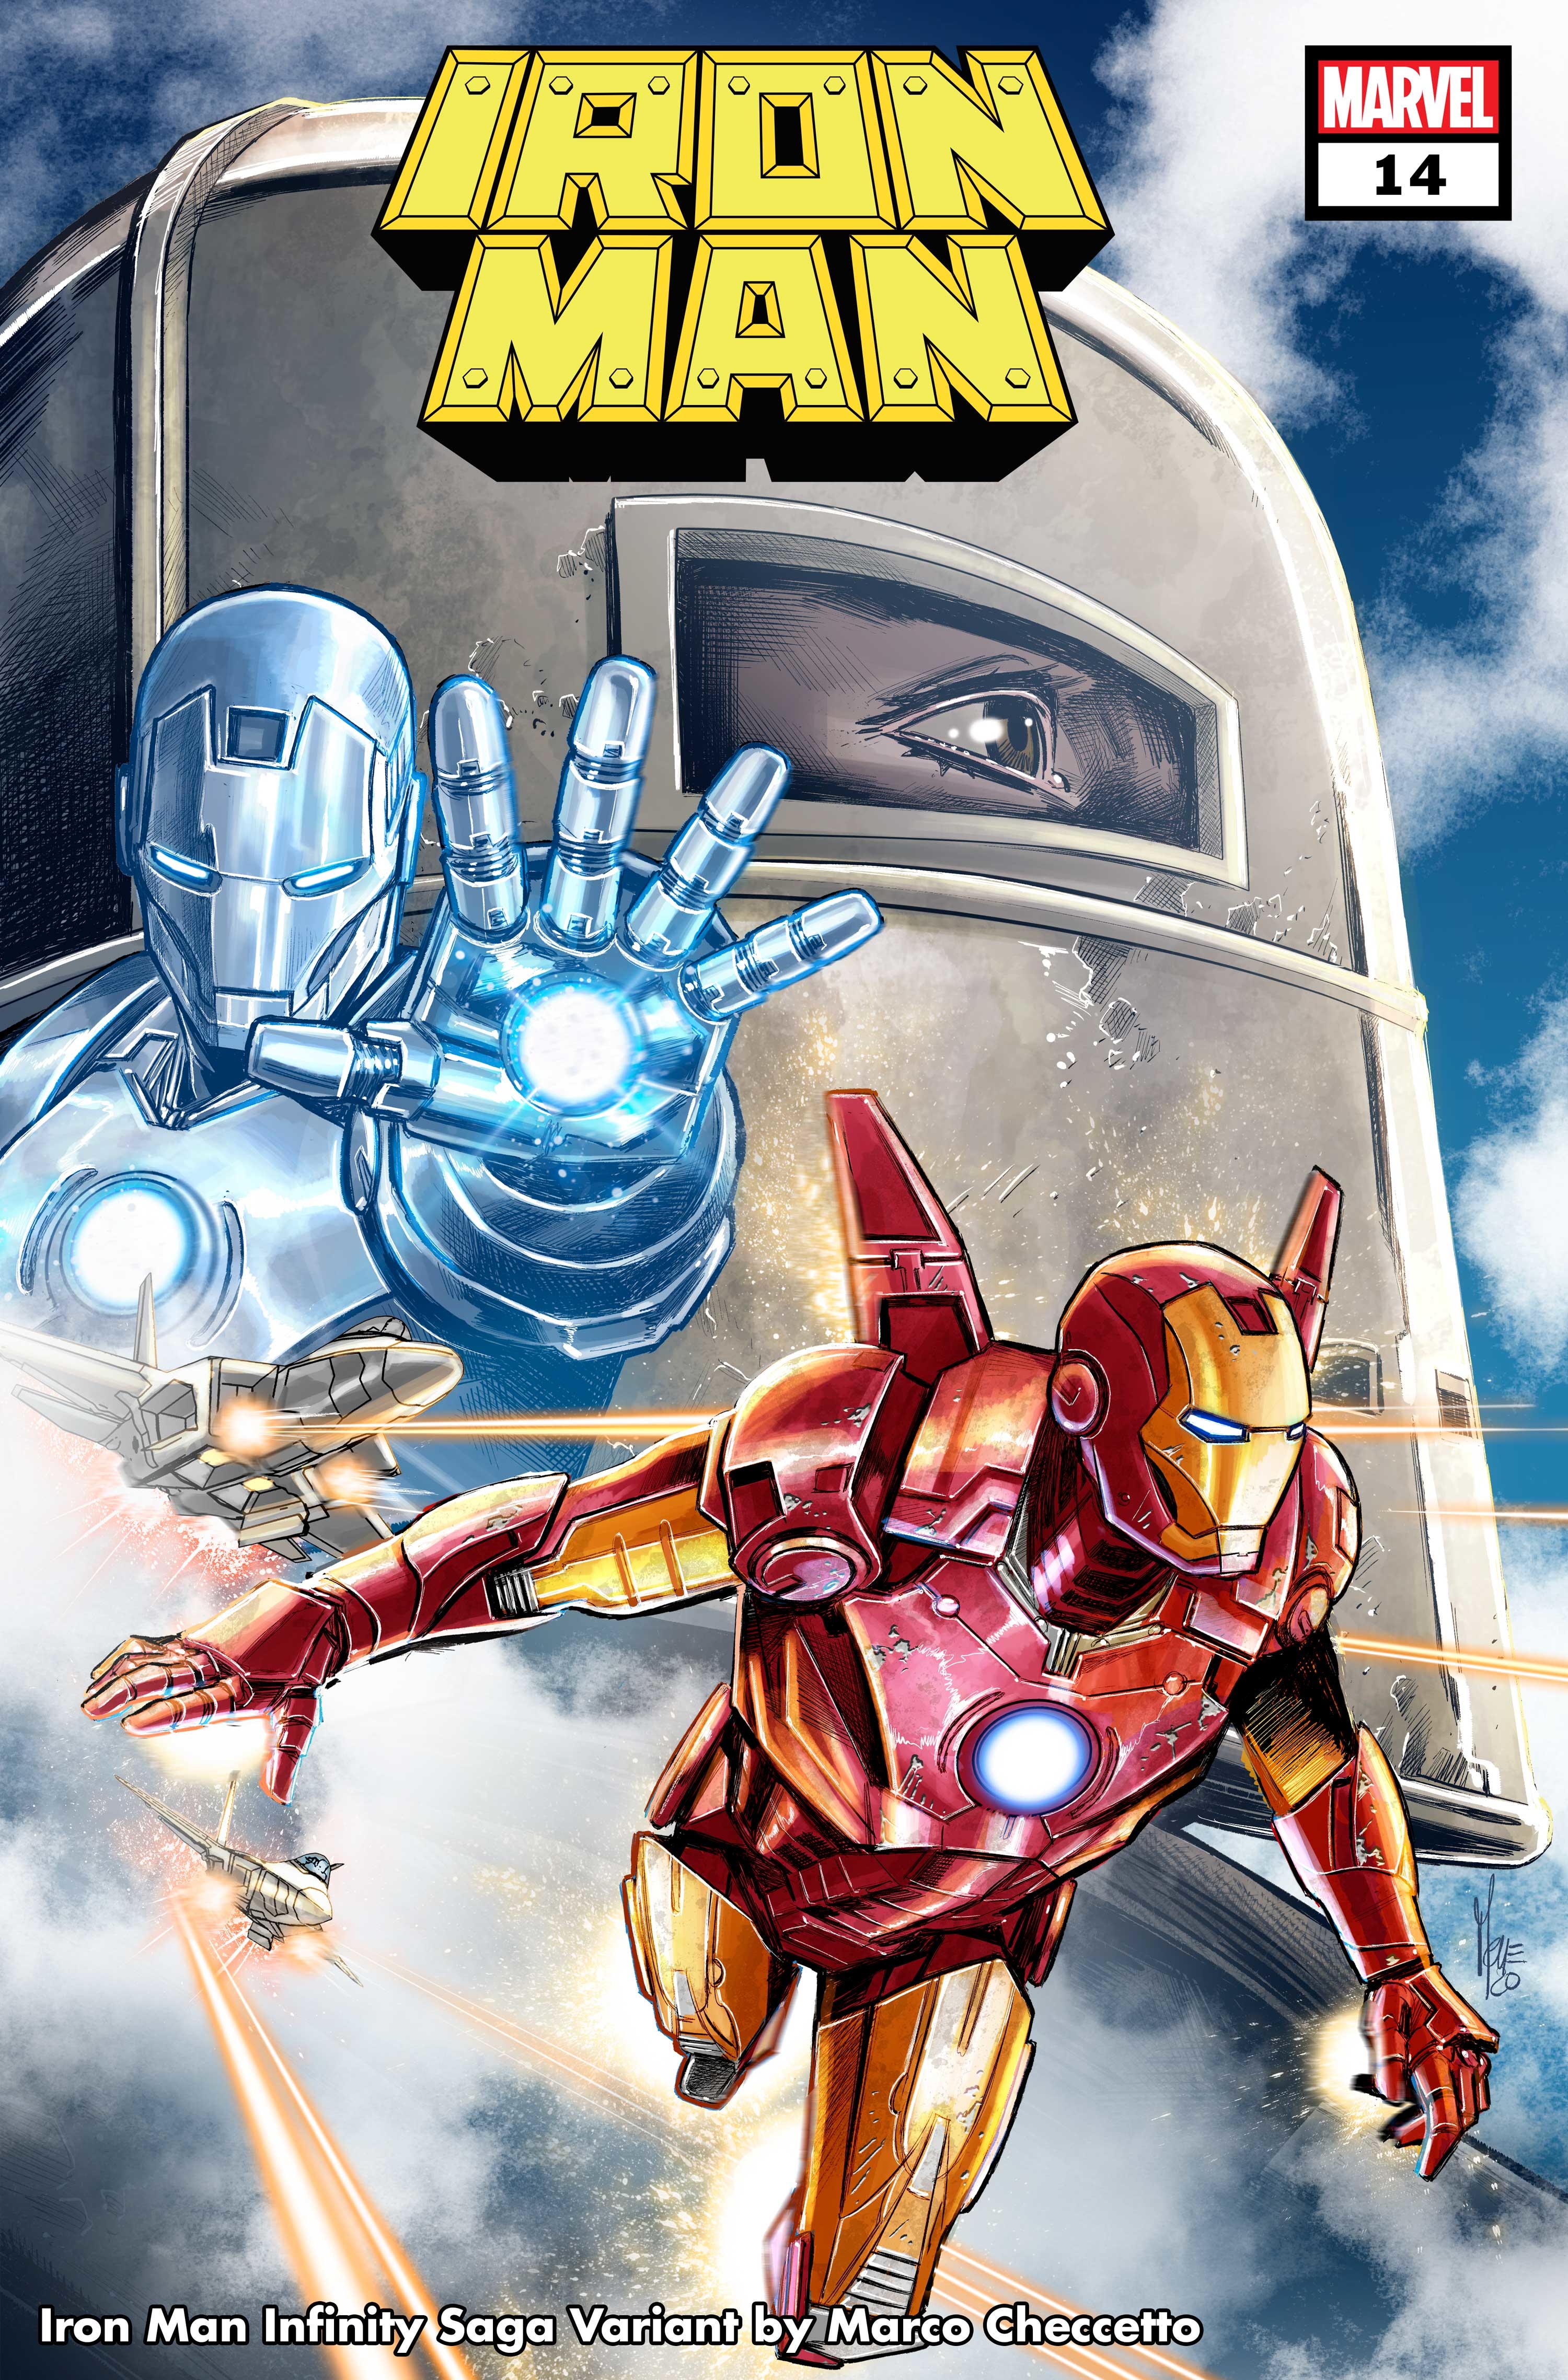 Iron Man #14 Checchetto Infinity Saga Phase 1 Variant (2020)